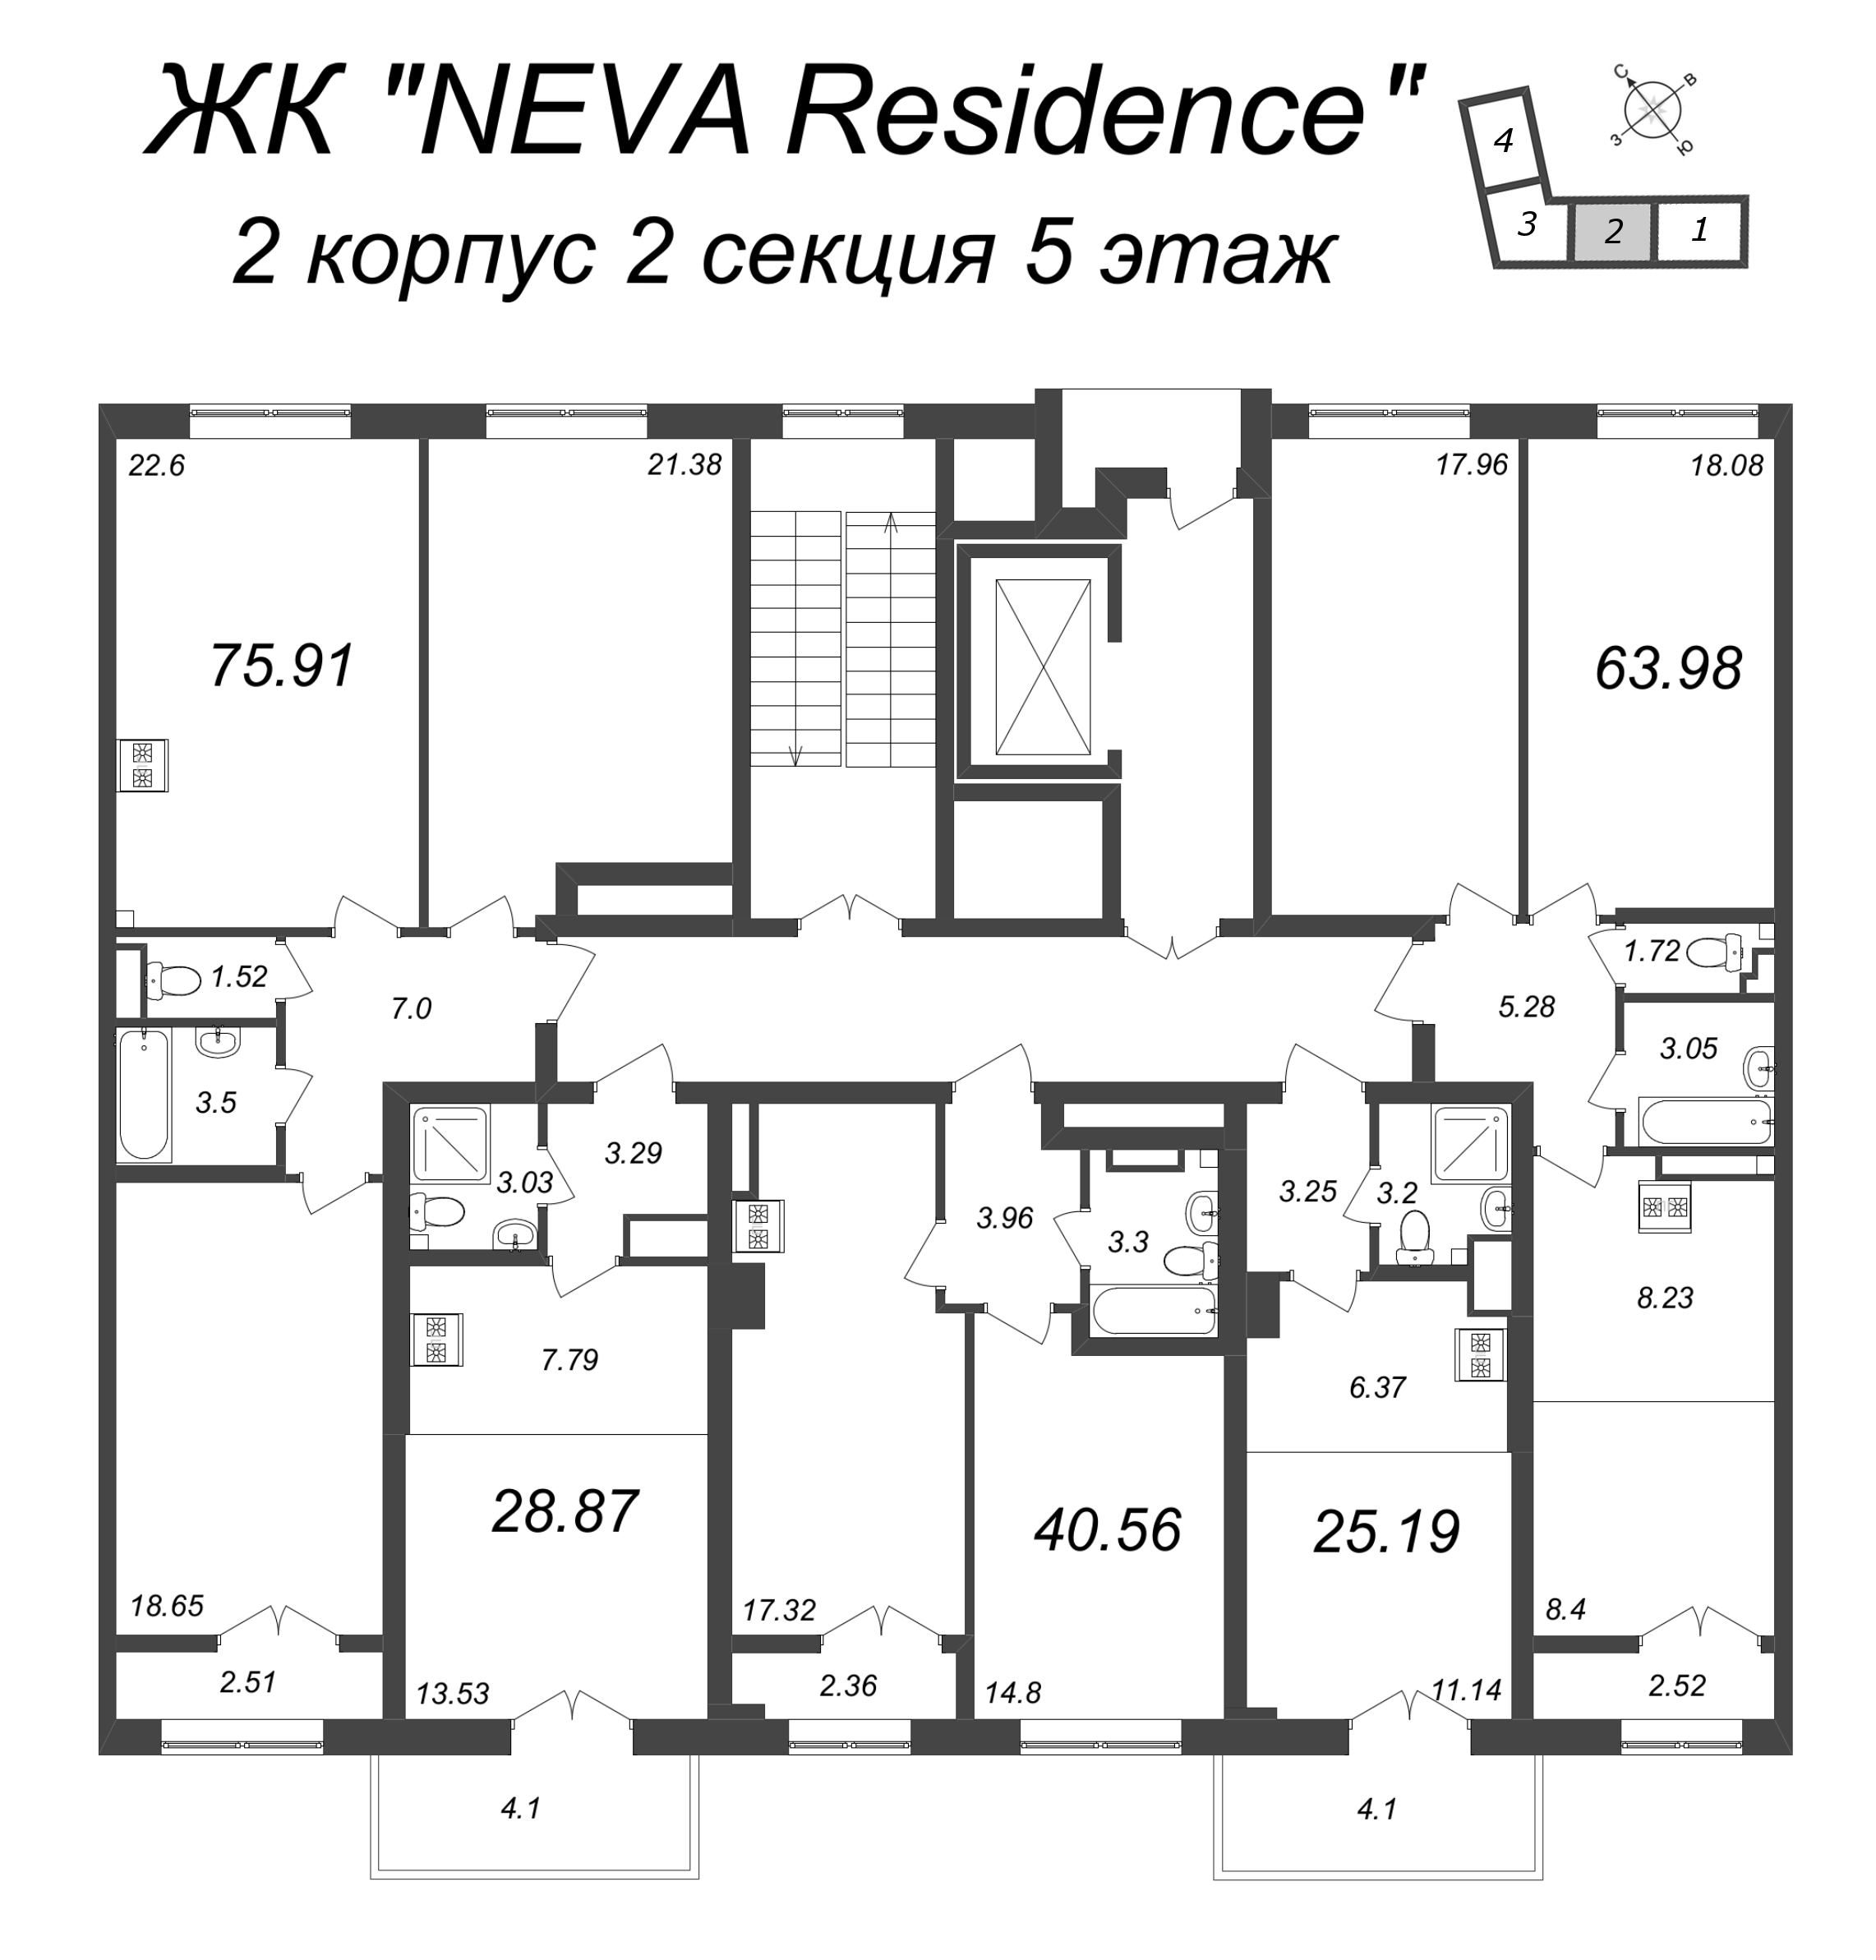 3-комнатная (Евро) квартира, 75.91 м² в ЖК "Neva Residence" - планировка этажа